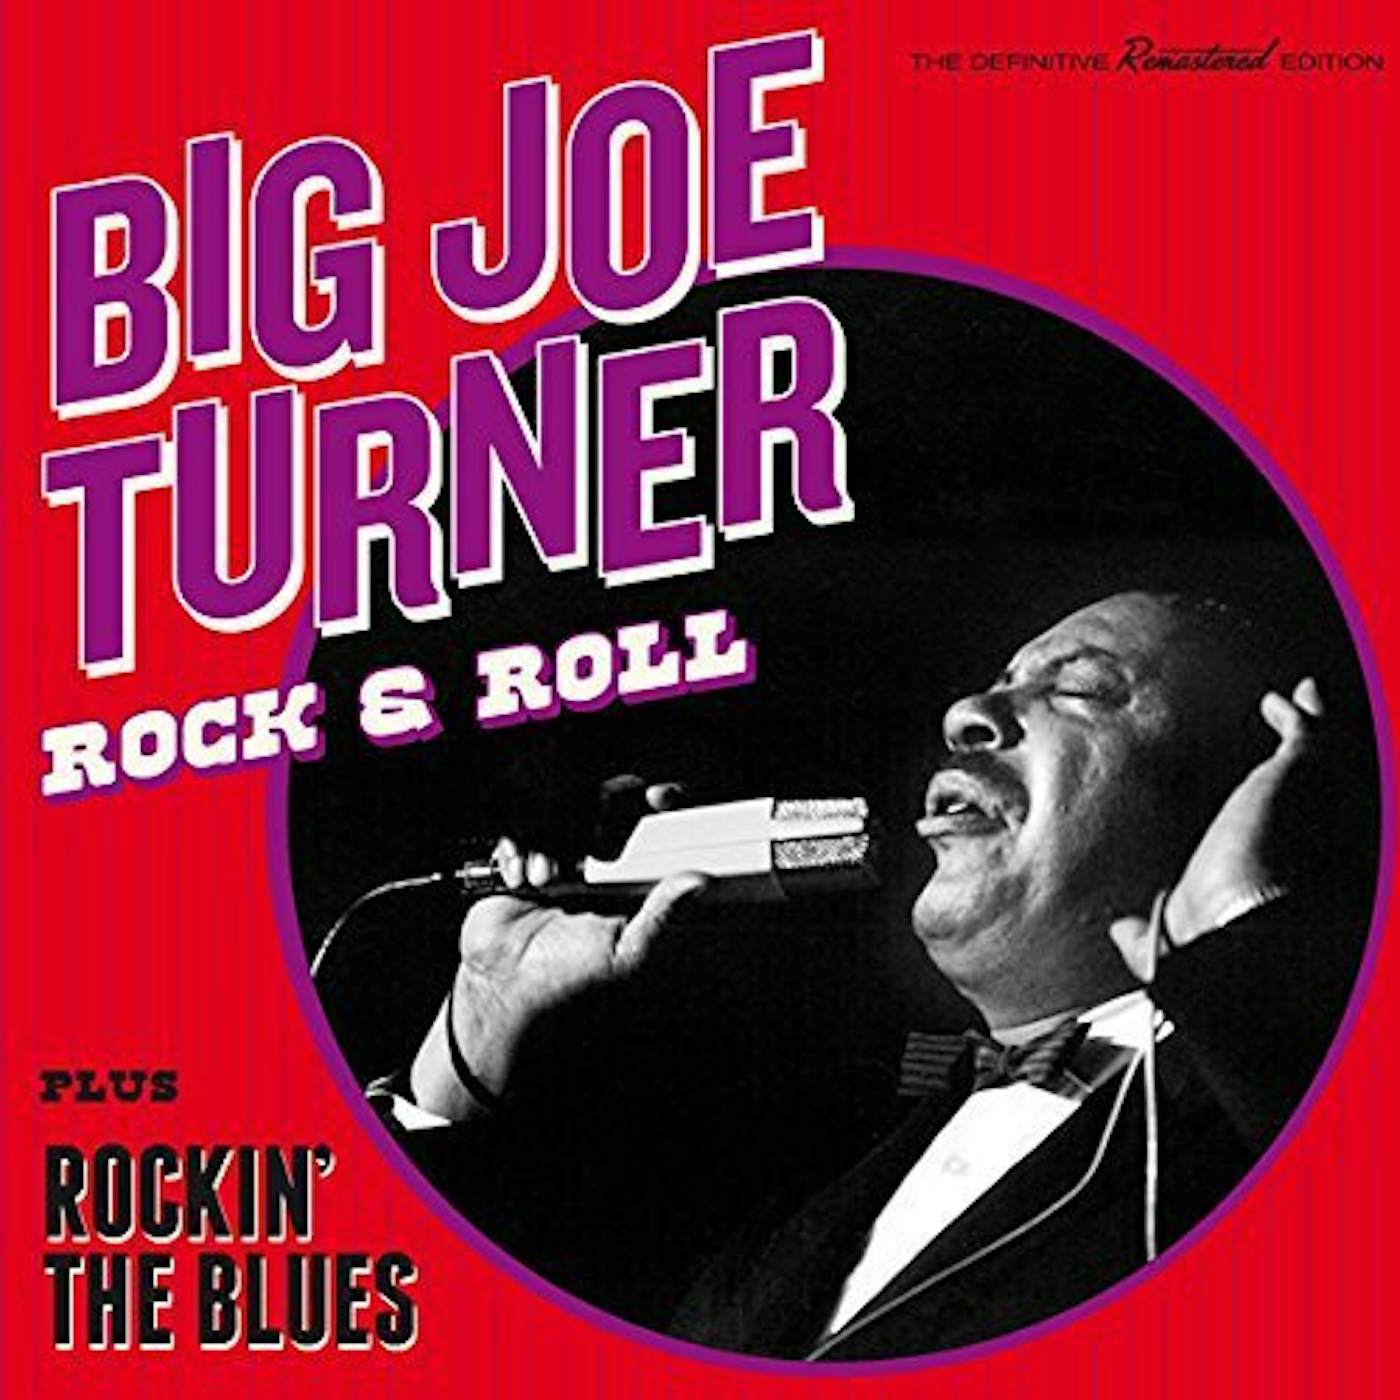 Big Joe Turner ROCK & ROLL / ROCKIN THE BLUES CD